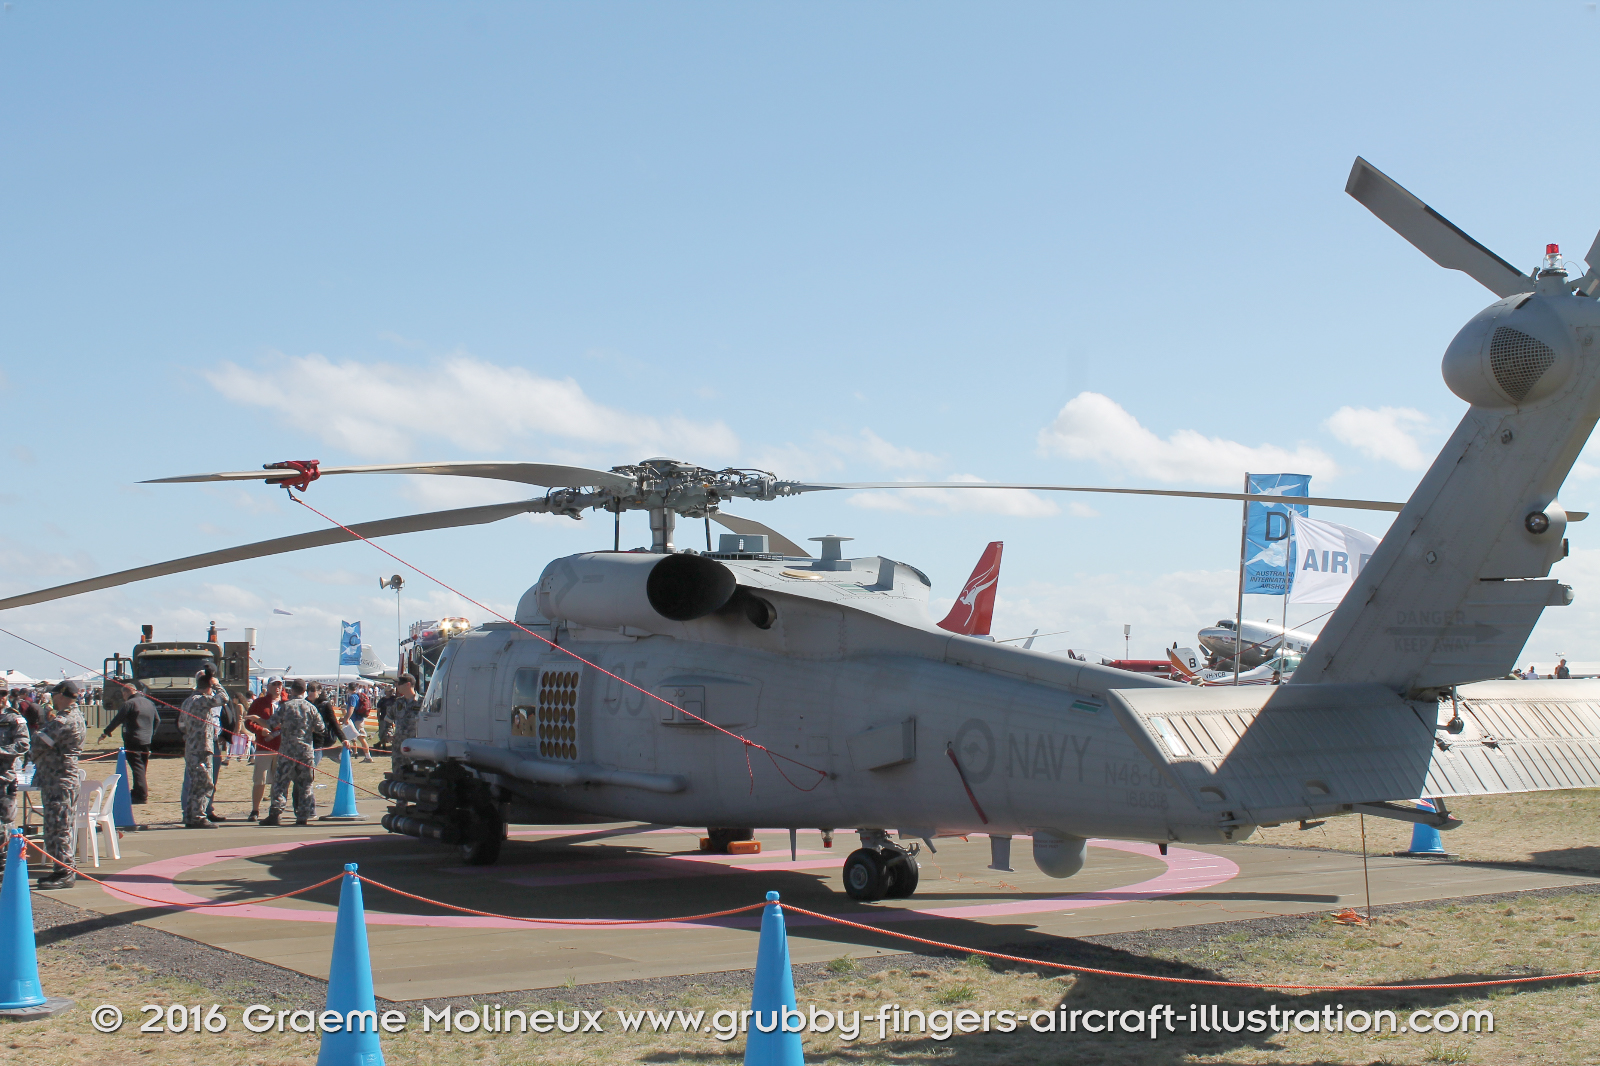 SIKORSKY_MH-60R_Seahawk_N48-005_Avalon_2015_08_GrubbyFingers